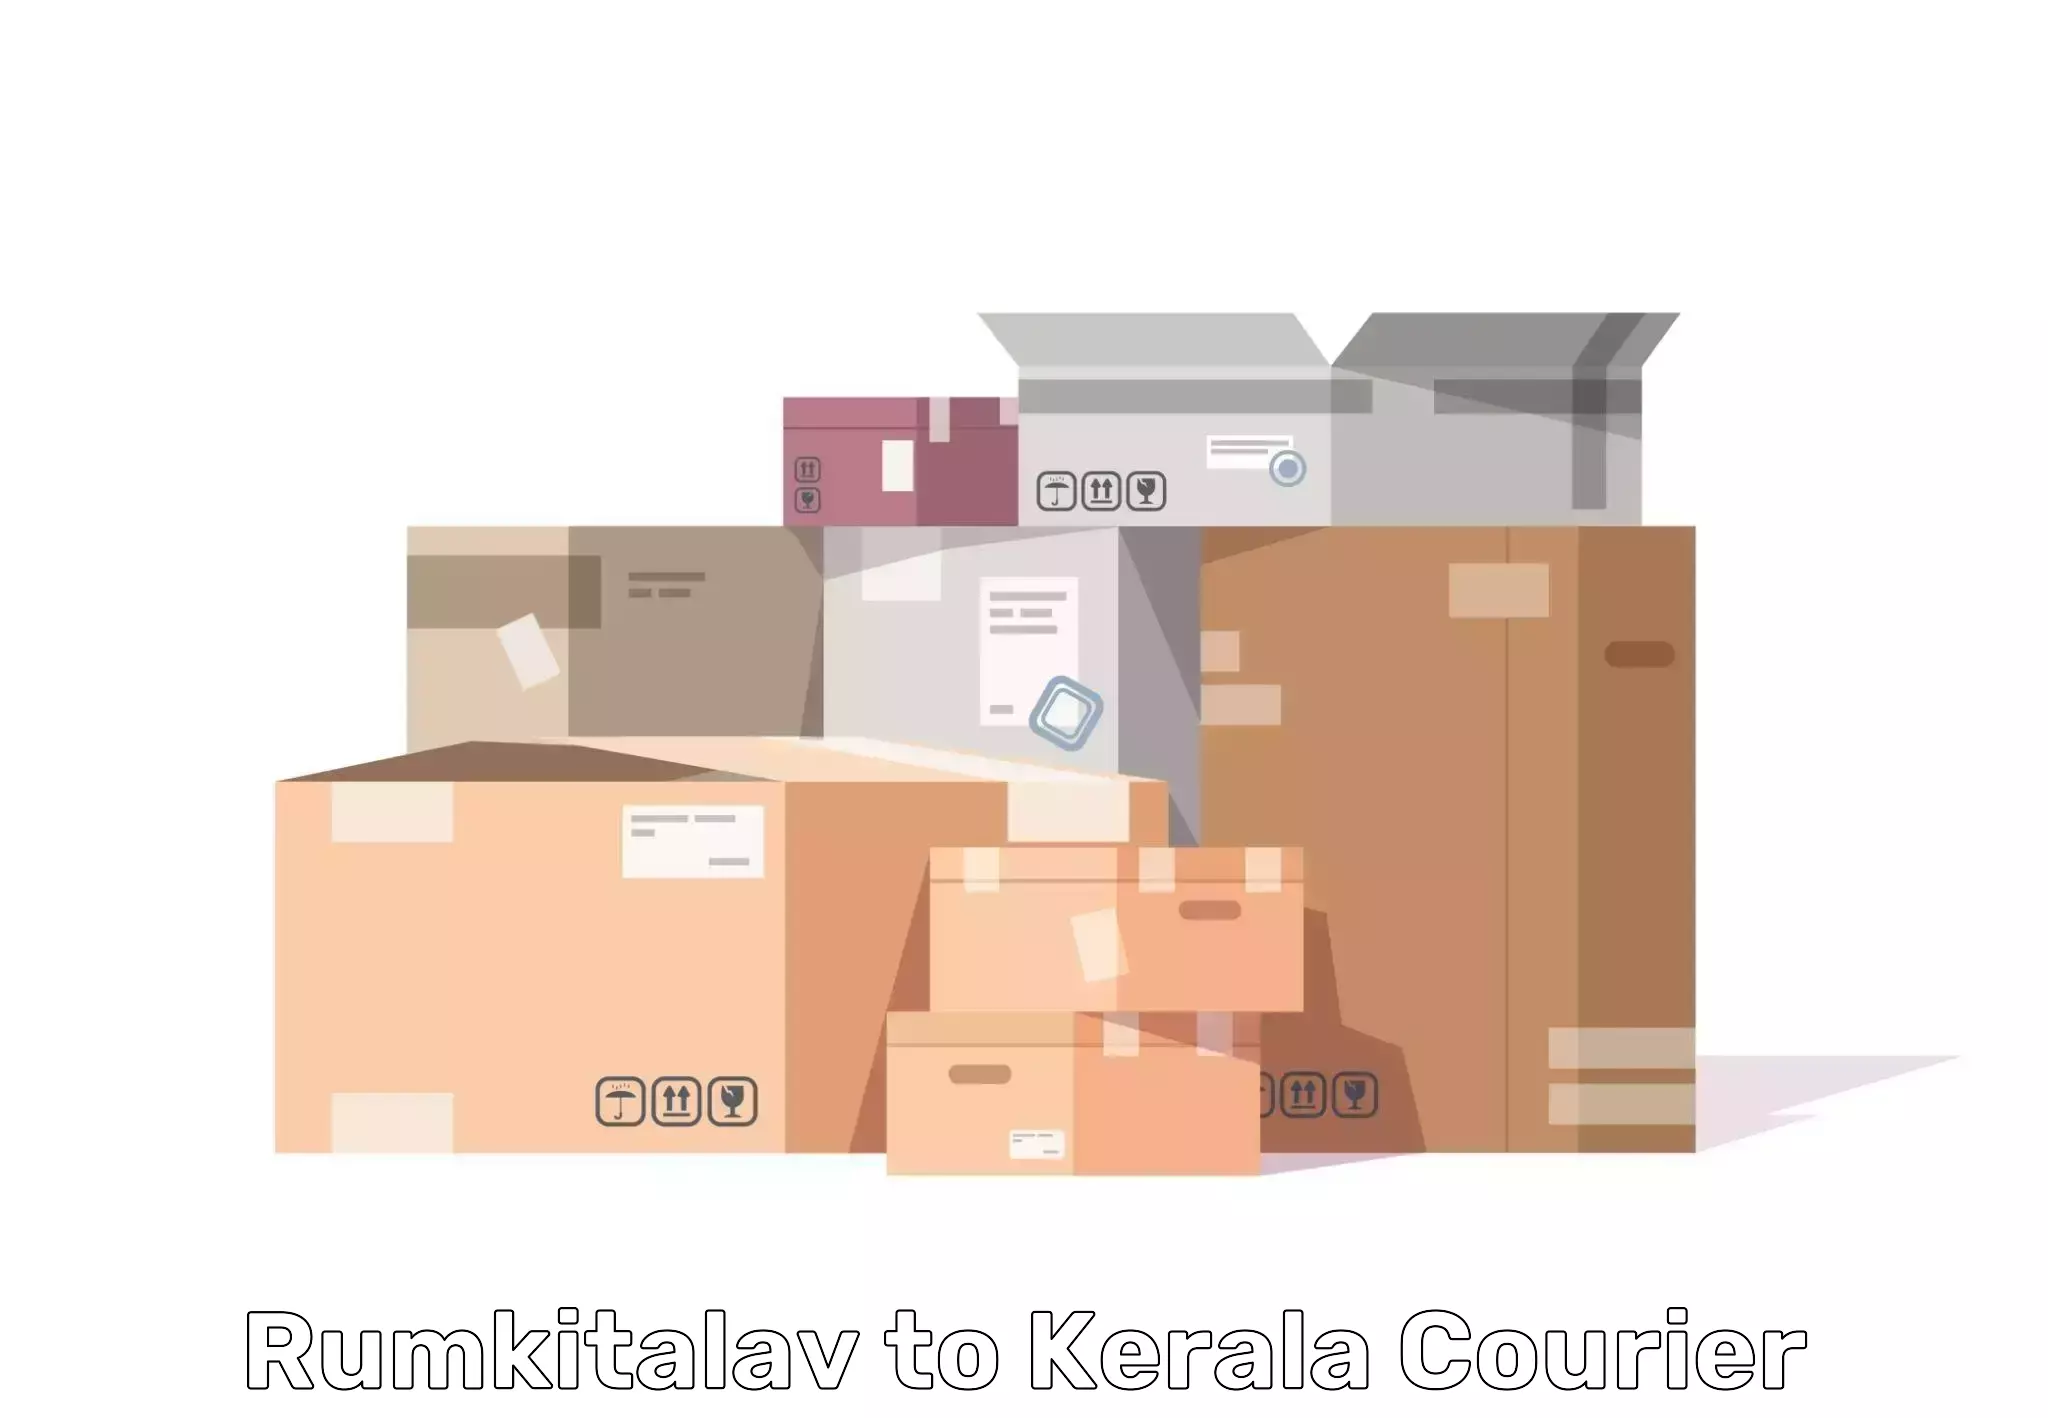 Professional furniture transport Rumkitalav to Kerala